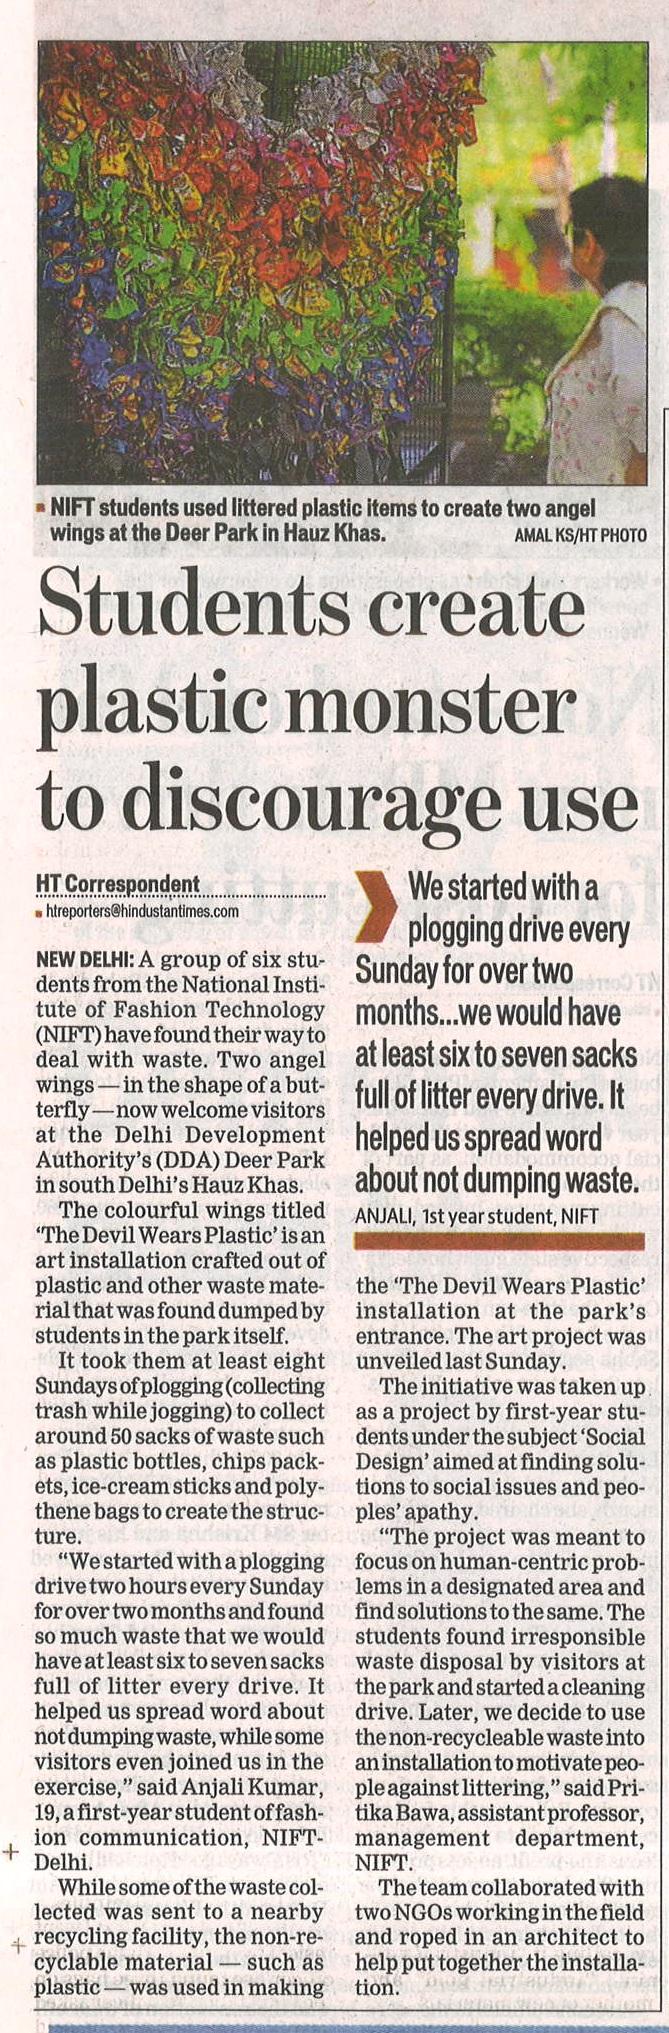 छात्रों द्वारा प्लास्टिक उपयोग को हतोत्साहित करने के लिए प्लास्टिक मॉन्स्टर बनाए गए 